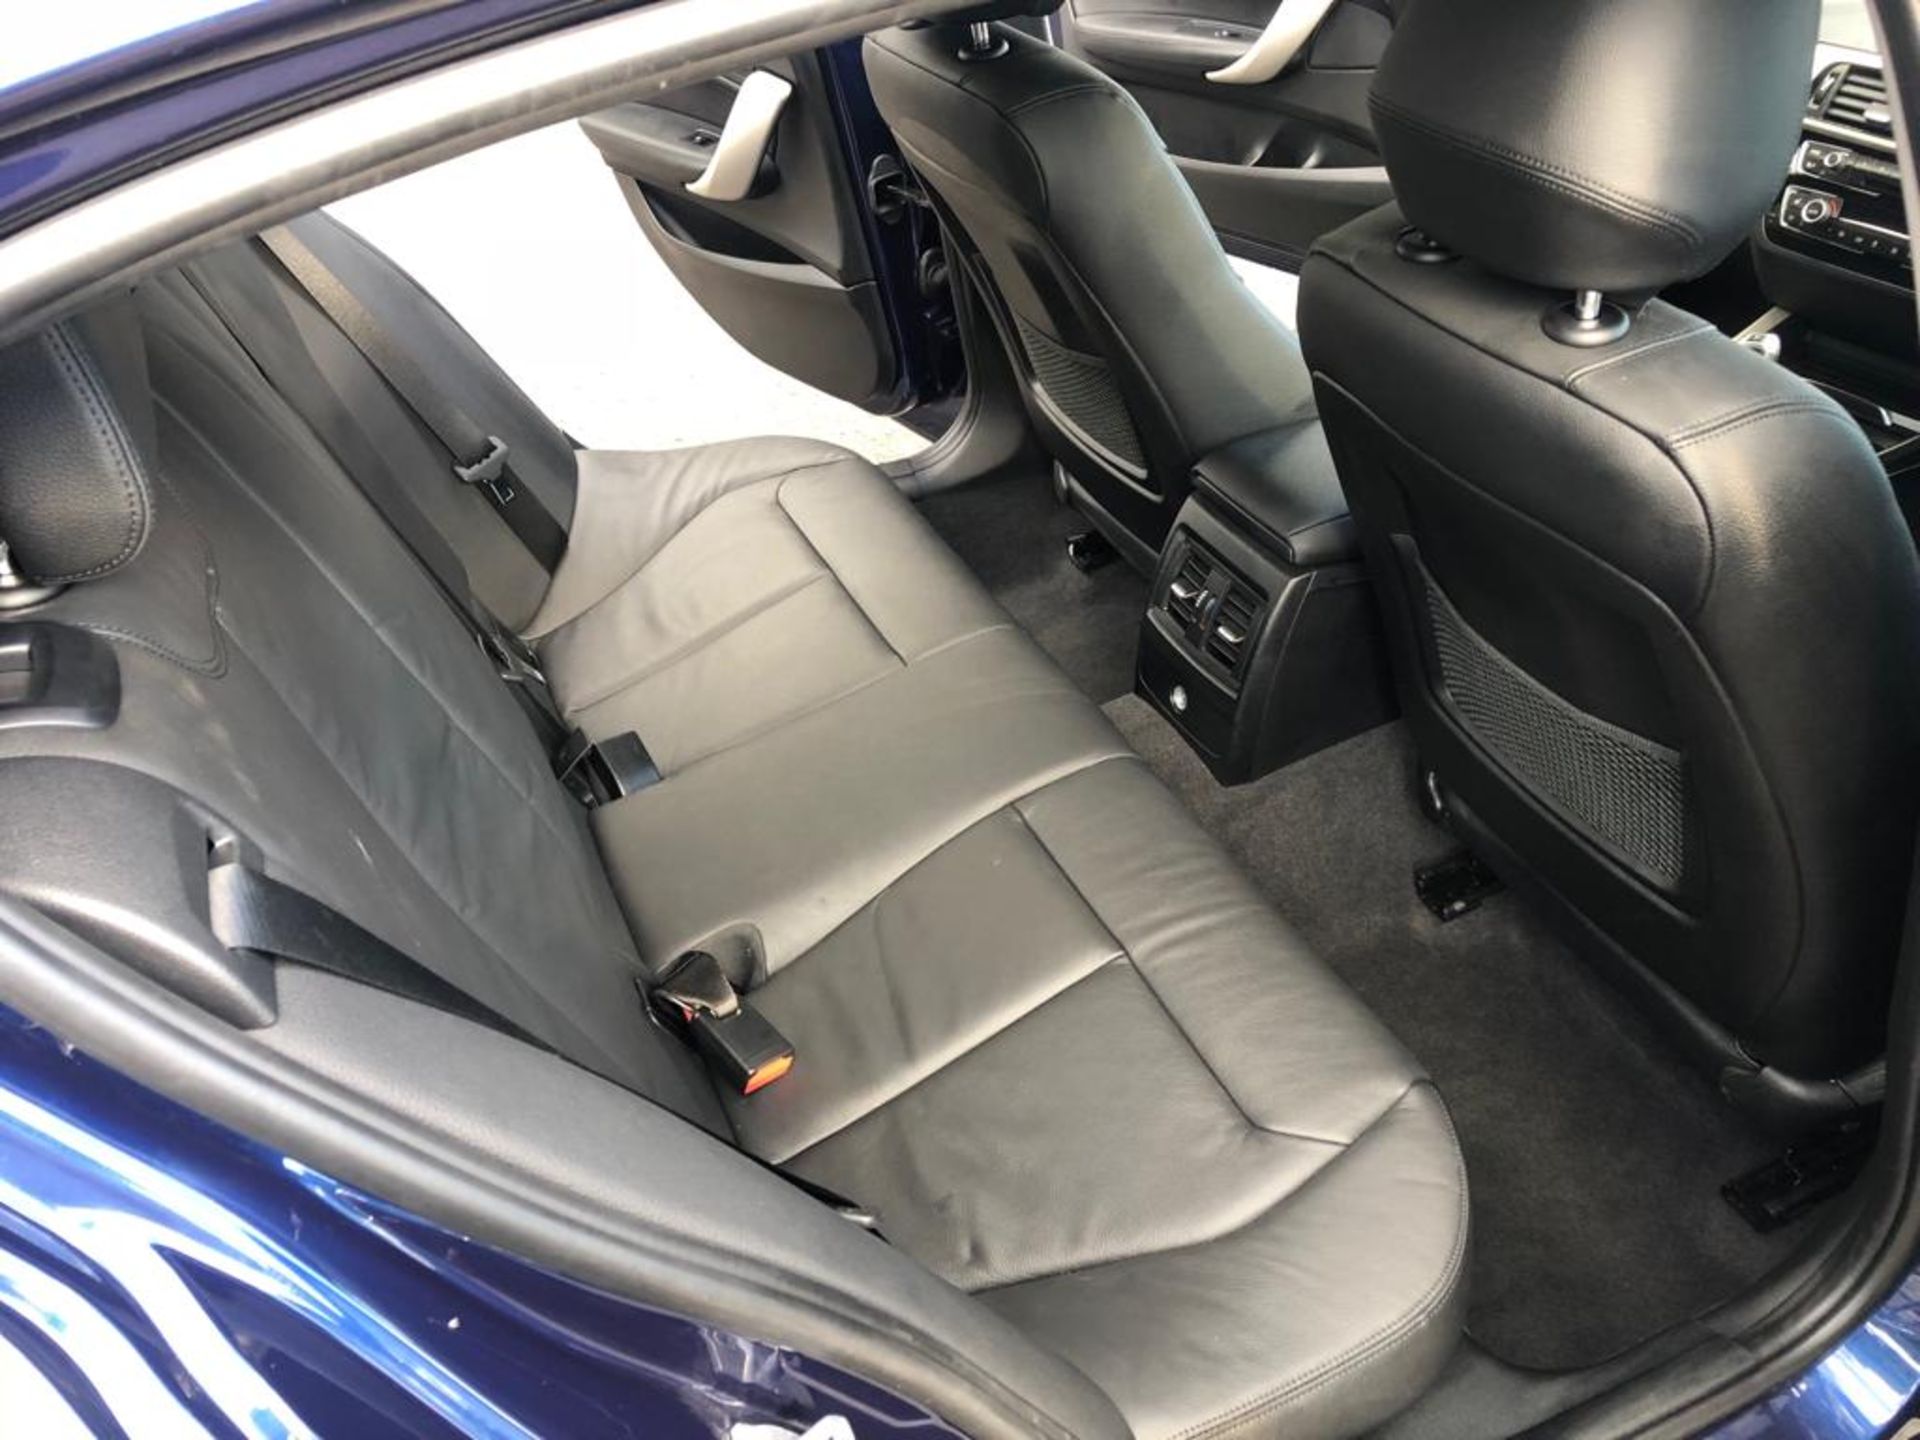 2018/67 REG BMW 118D SE AUTOMATIC BLUE DIESEL 5 DOOR HATCHBACK, SHOWING 0 FORMER KEEPERS *NO VAT* - Image 12 of 18